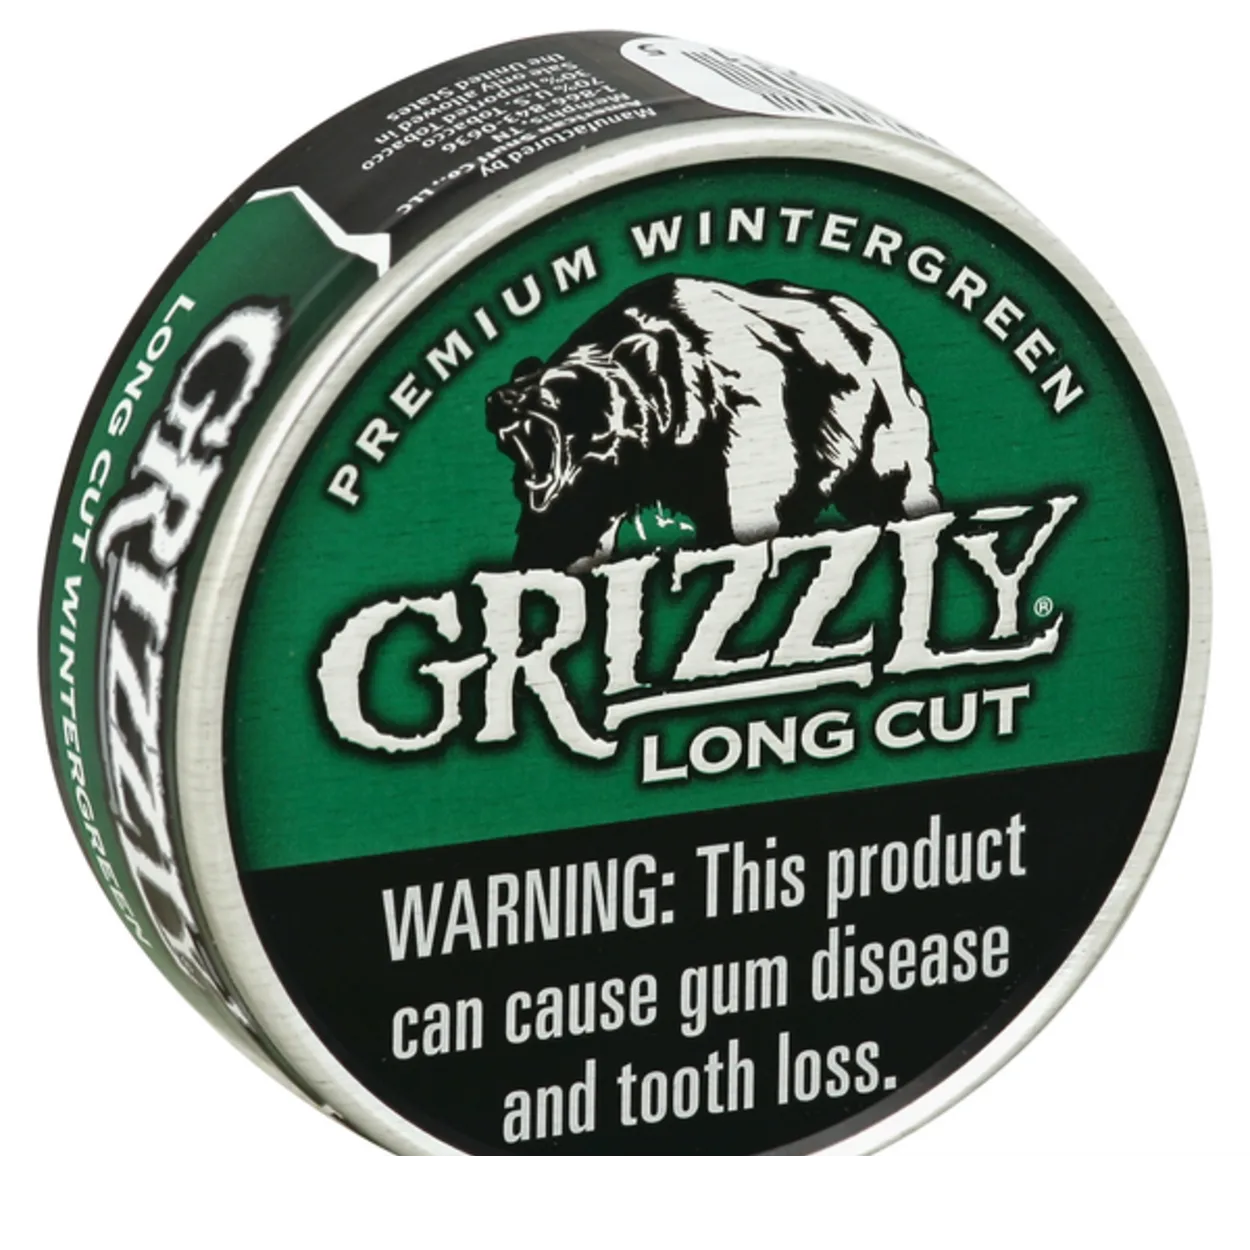  อะไรคือความเหมือนและความแตกต่างระหว่าง Grizzly และ Copenhagen Chewing Tobacco? (ค้นพบ) – ความแตกต่างทั้งหมด